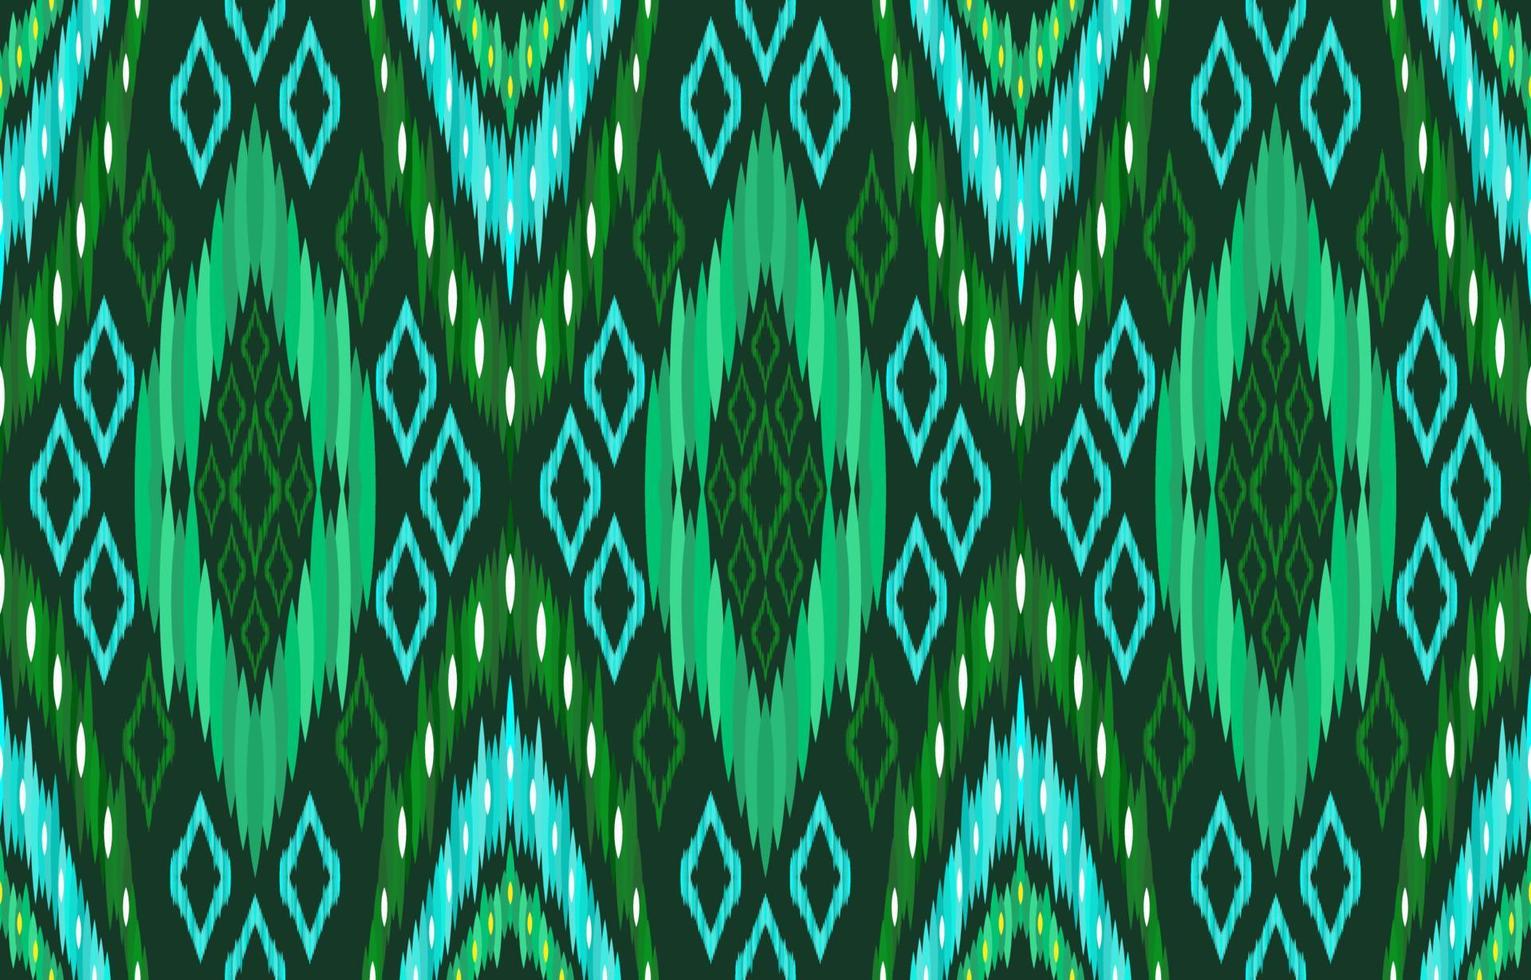 groen ikat patronen. meetkundig tribal wijnoogst retro stijl. etnisch kleding stof ikat naadloos patroon. Indisch Navajo aztec ikat afdrukken vector illustratie. ontwerp voor backdrop structuur kleding stof kleding textiel.